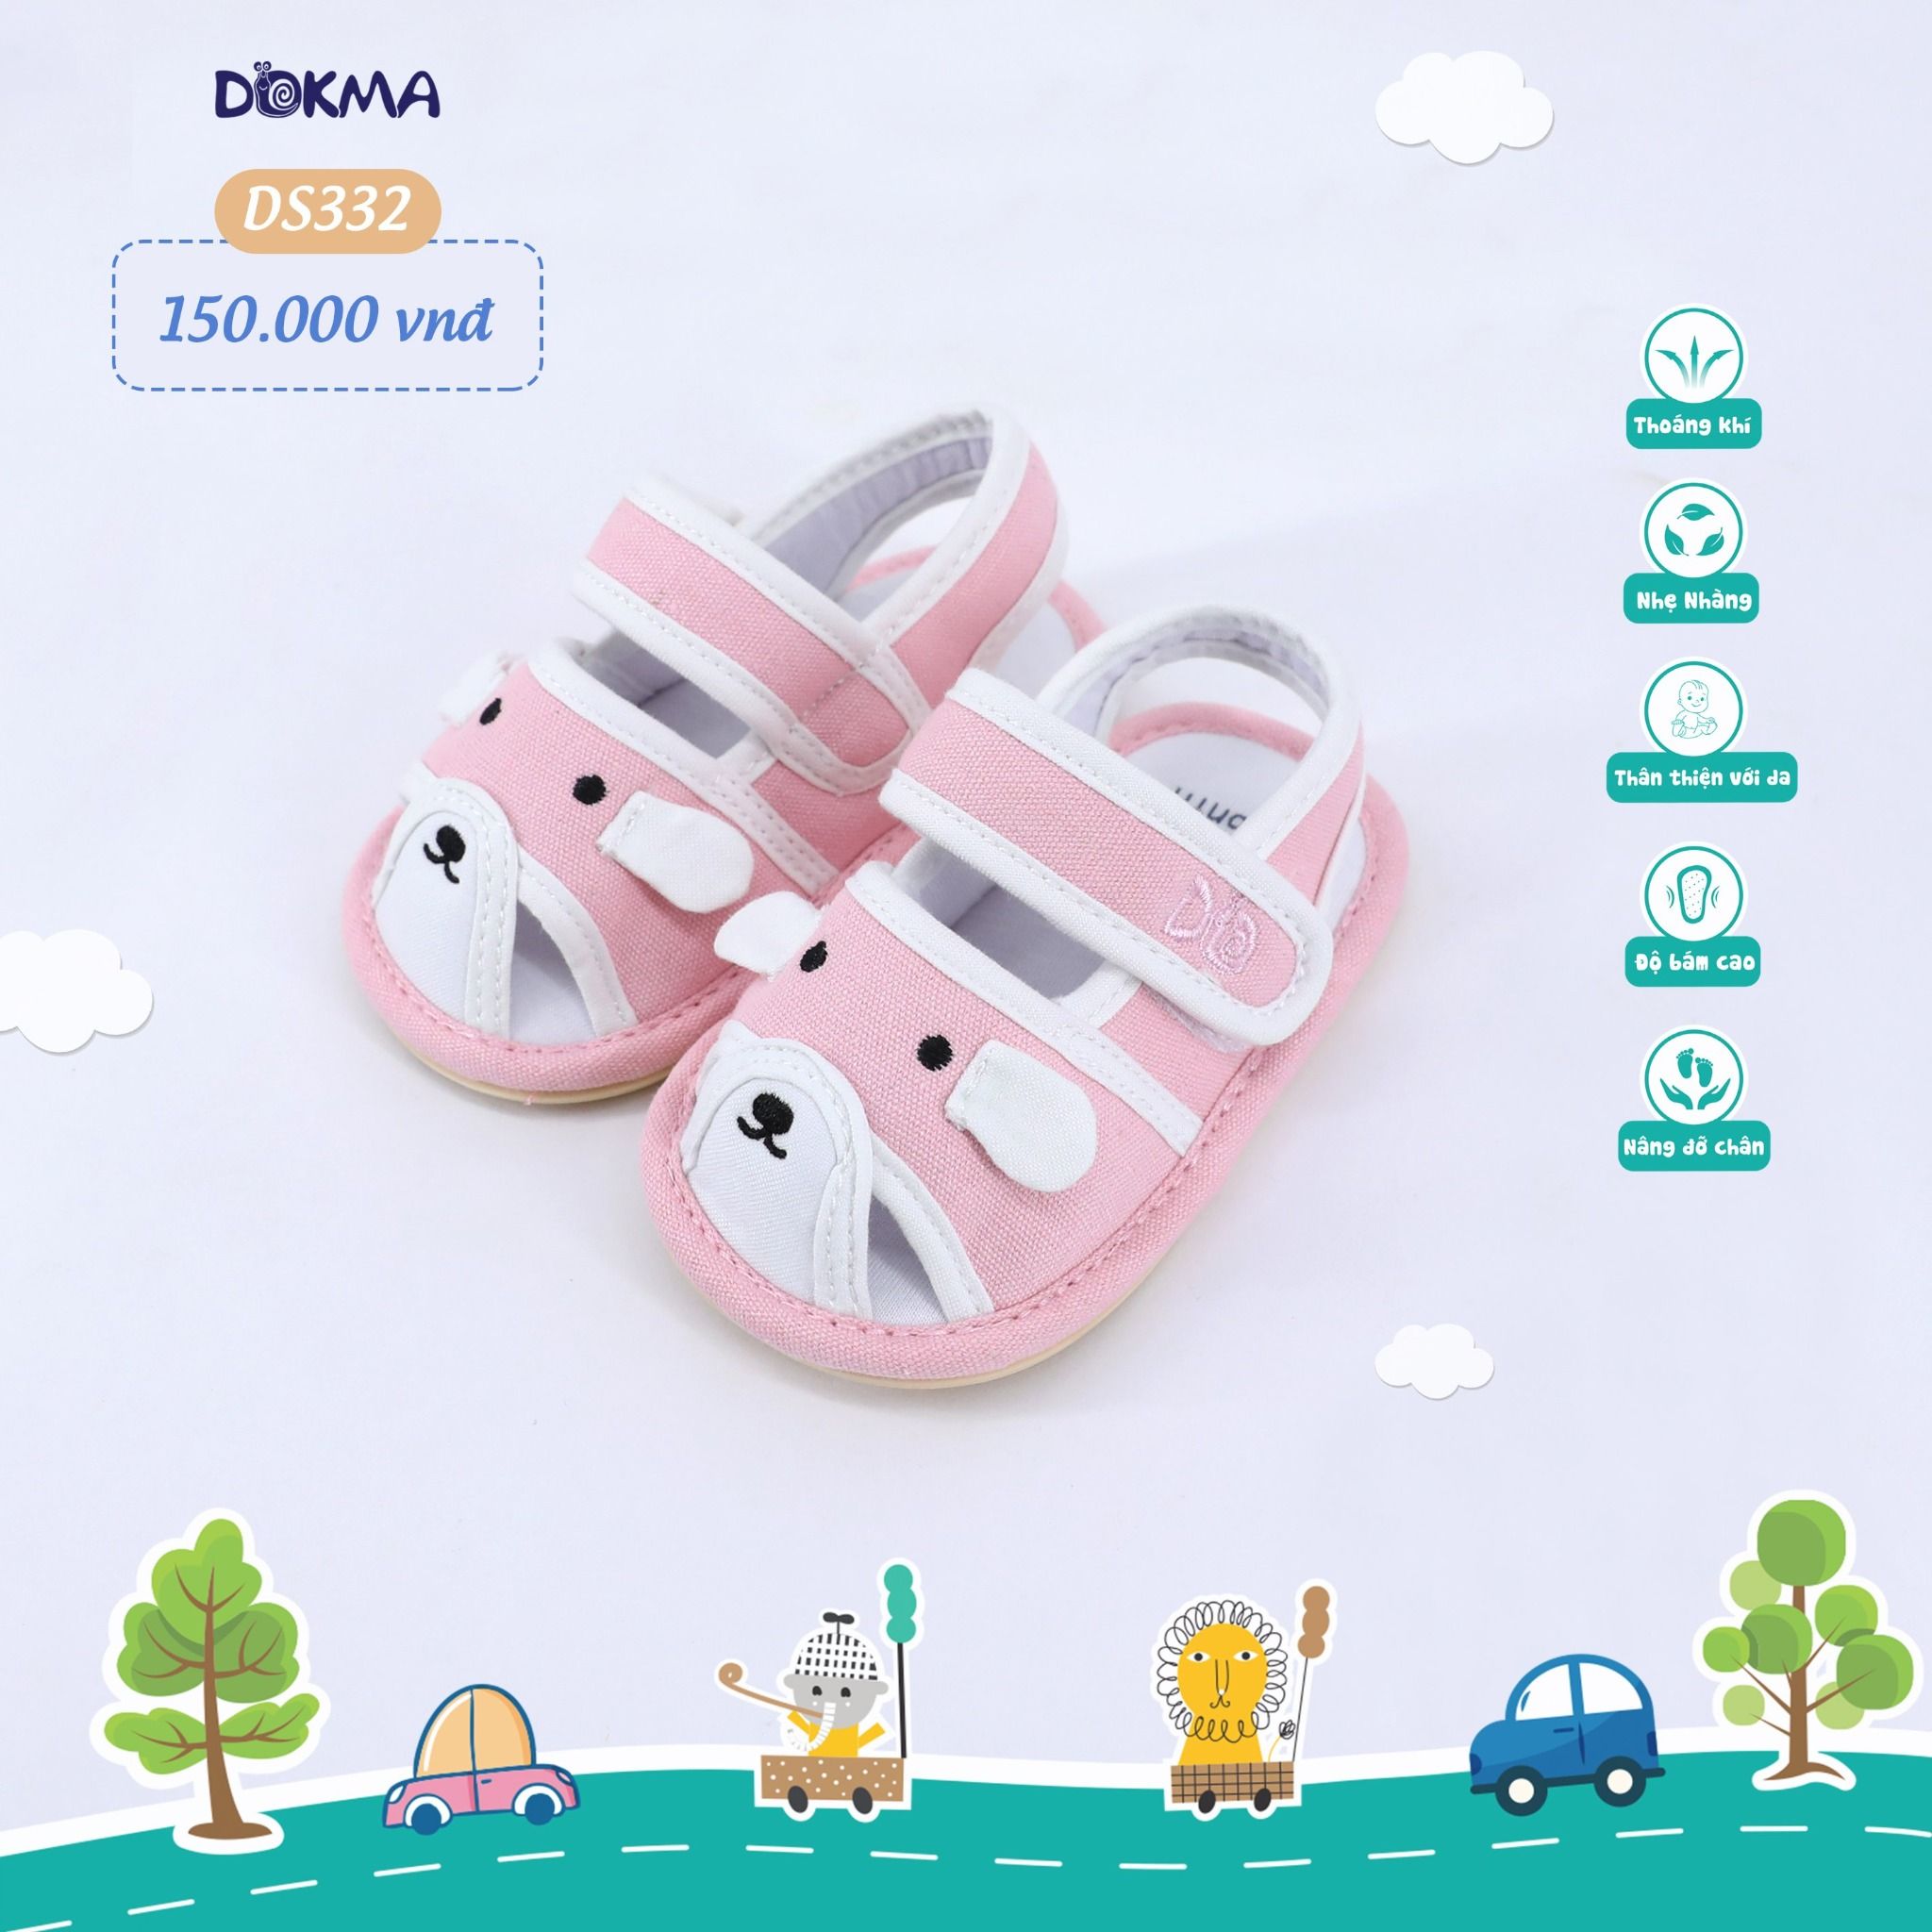  DS332 - Giày tập đi cho bé 